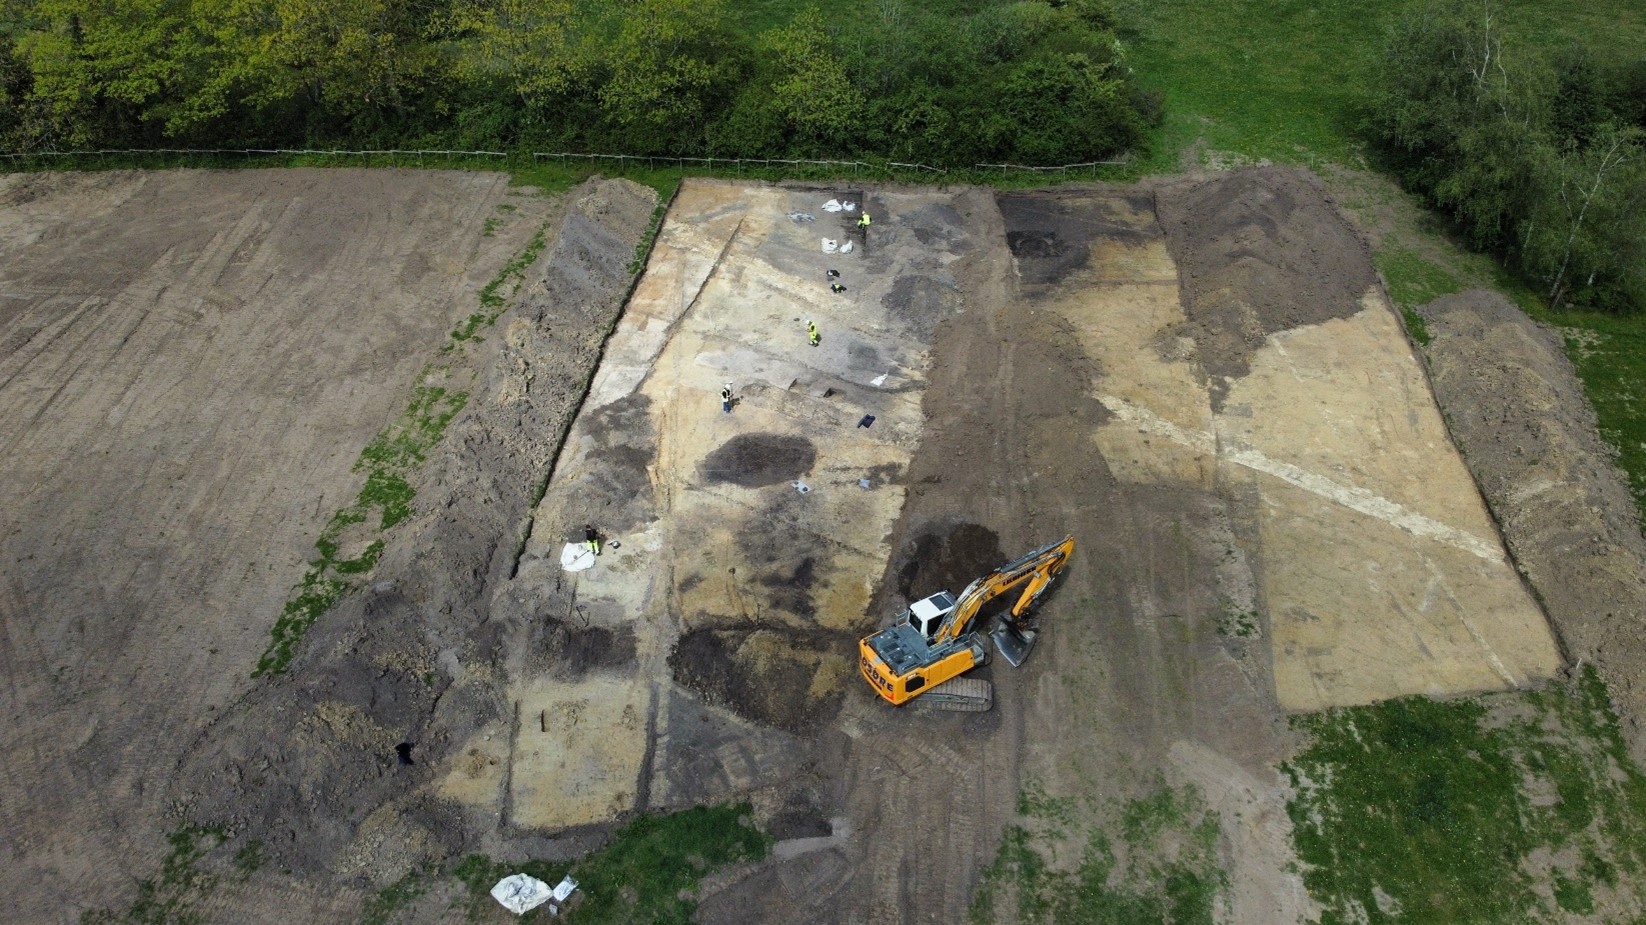 Udgravningen set fra luften. Kulturlagene fra stenalderen ses øverst i billedet, hvor arkæologerne arbejder.